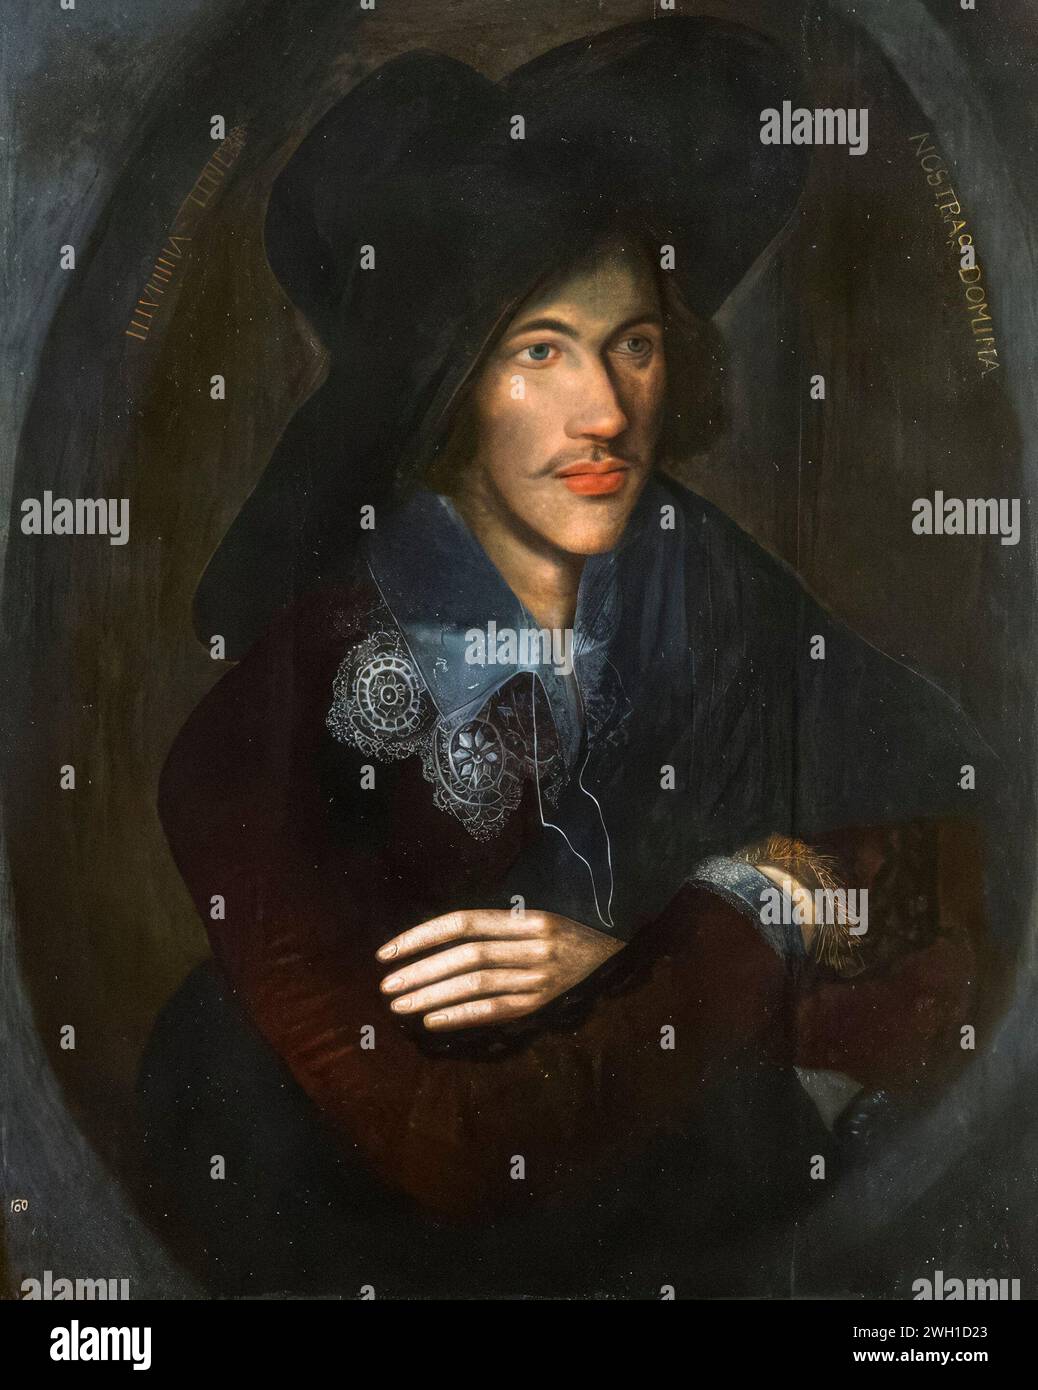 John Donne (1571 oder 1572–1631) als junger Mann. Englischer Dichter und Kleriker in der Church of England, Portraitgemälde in Öl auf Tafel, um 1595 Stockfoto